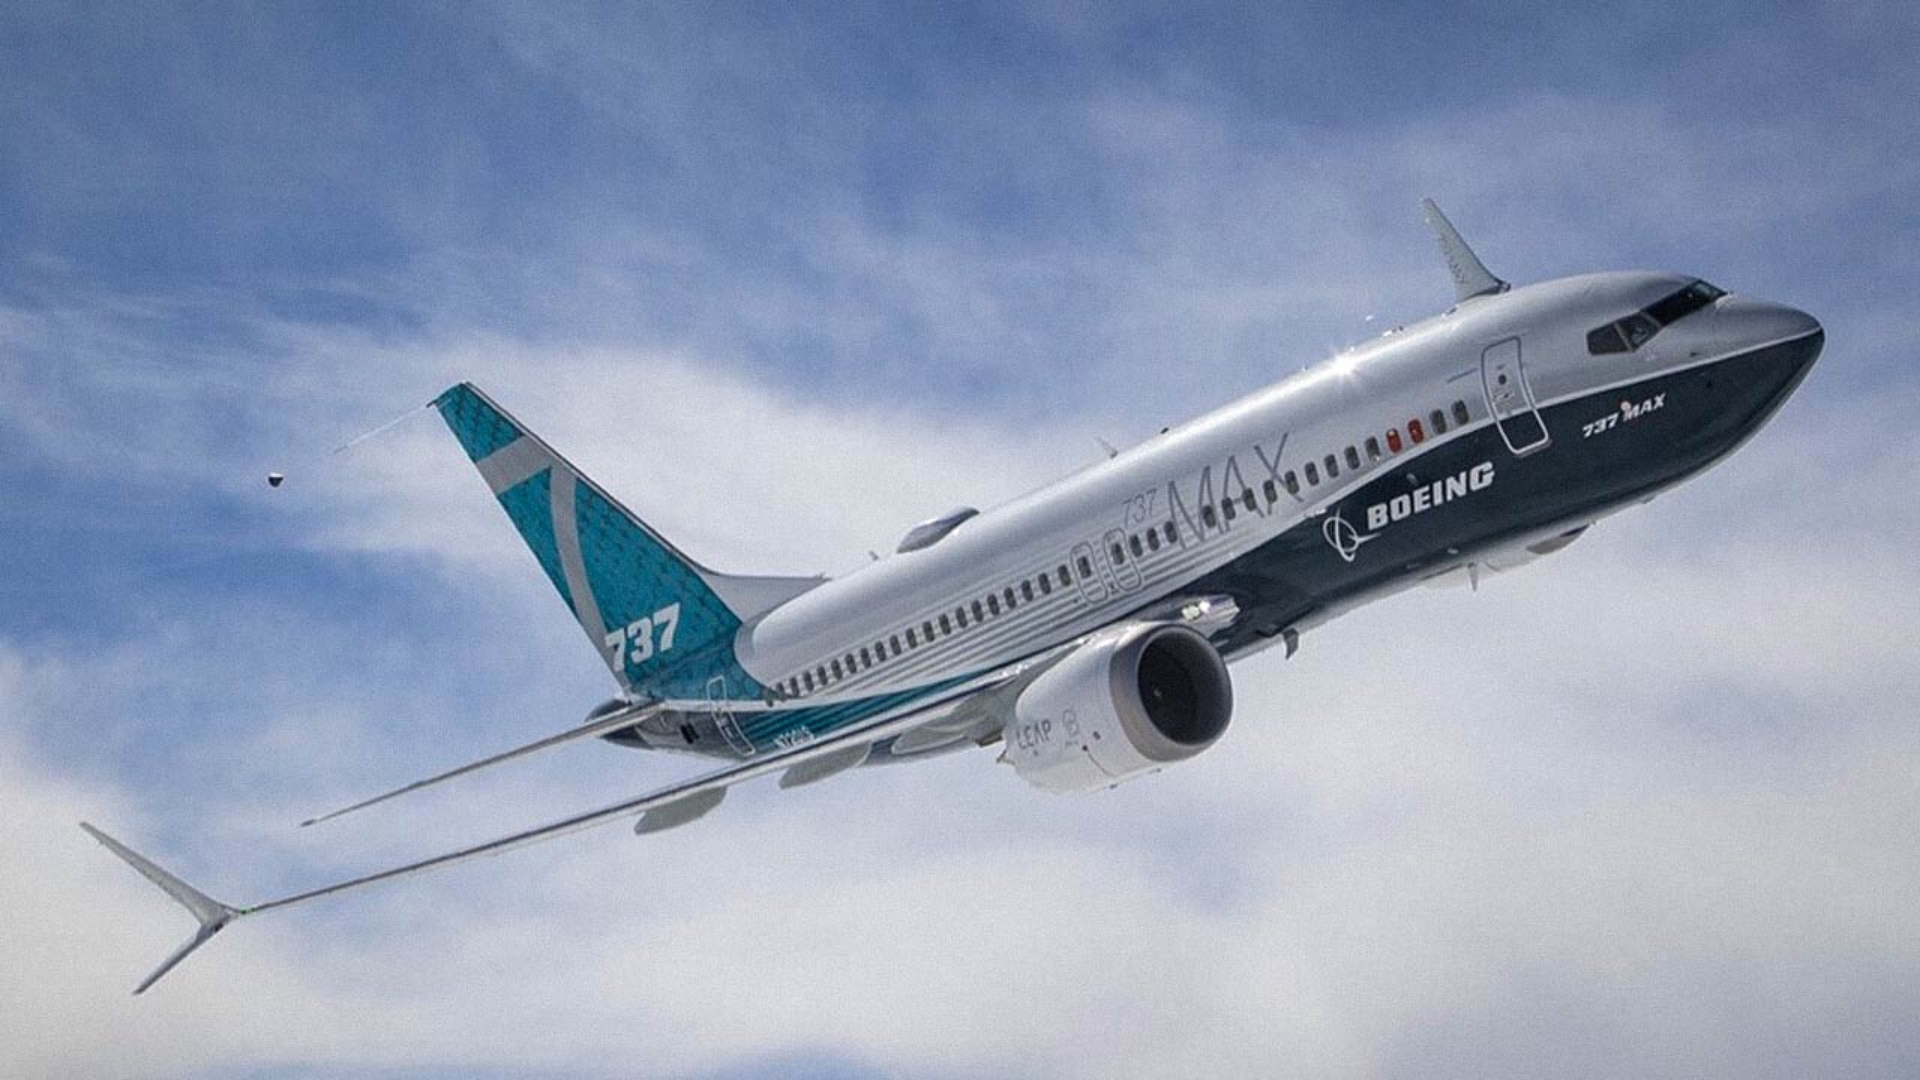 Boeing confirms SEC investigating disclosures around 737 Max